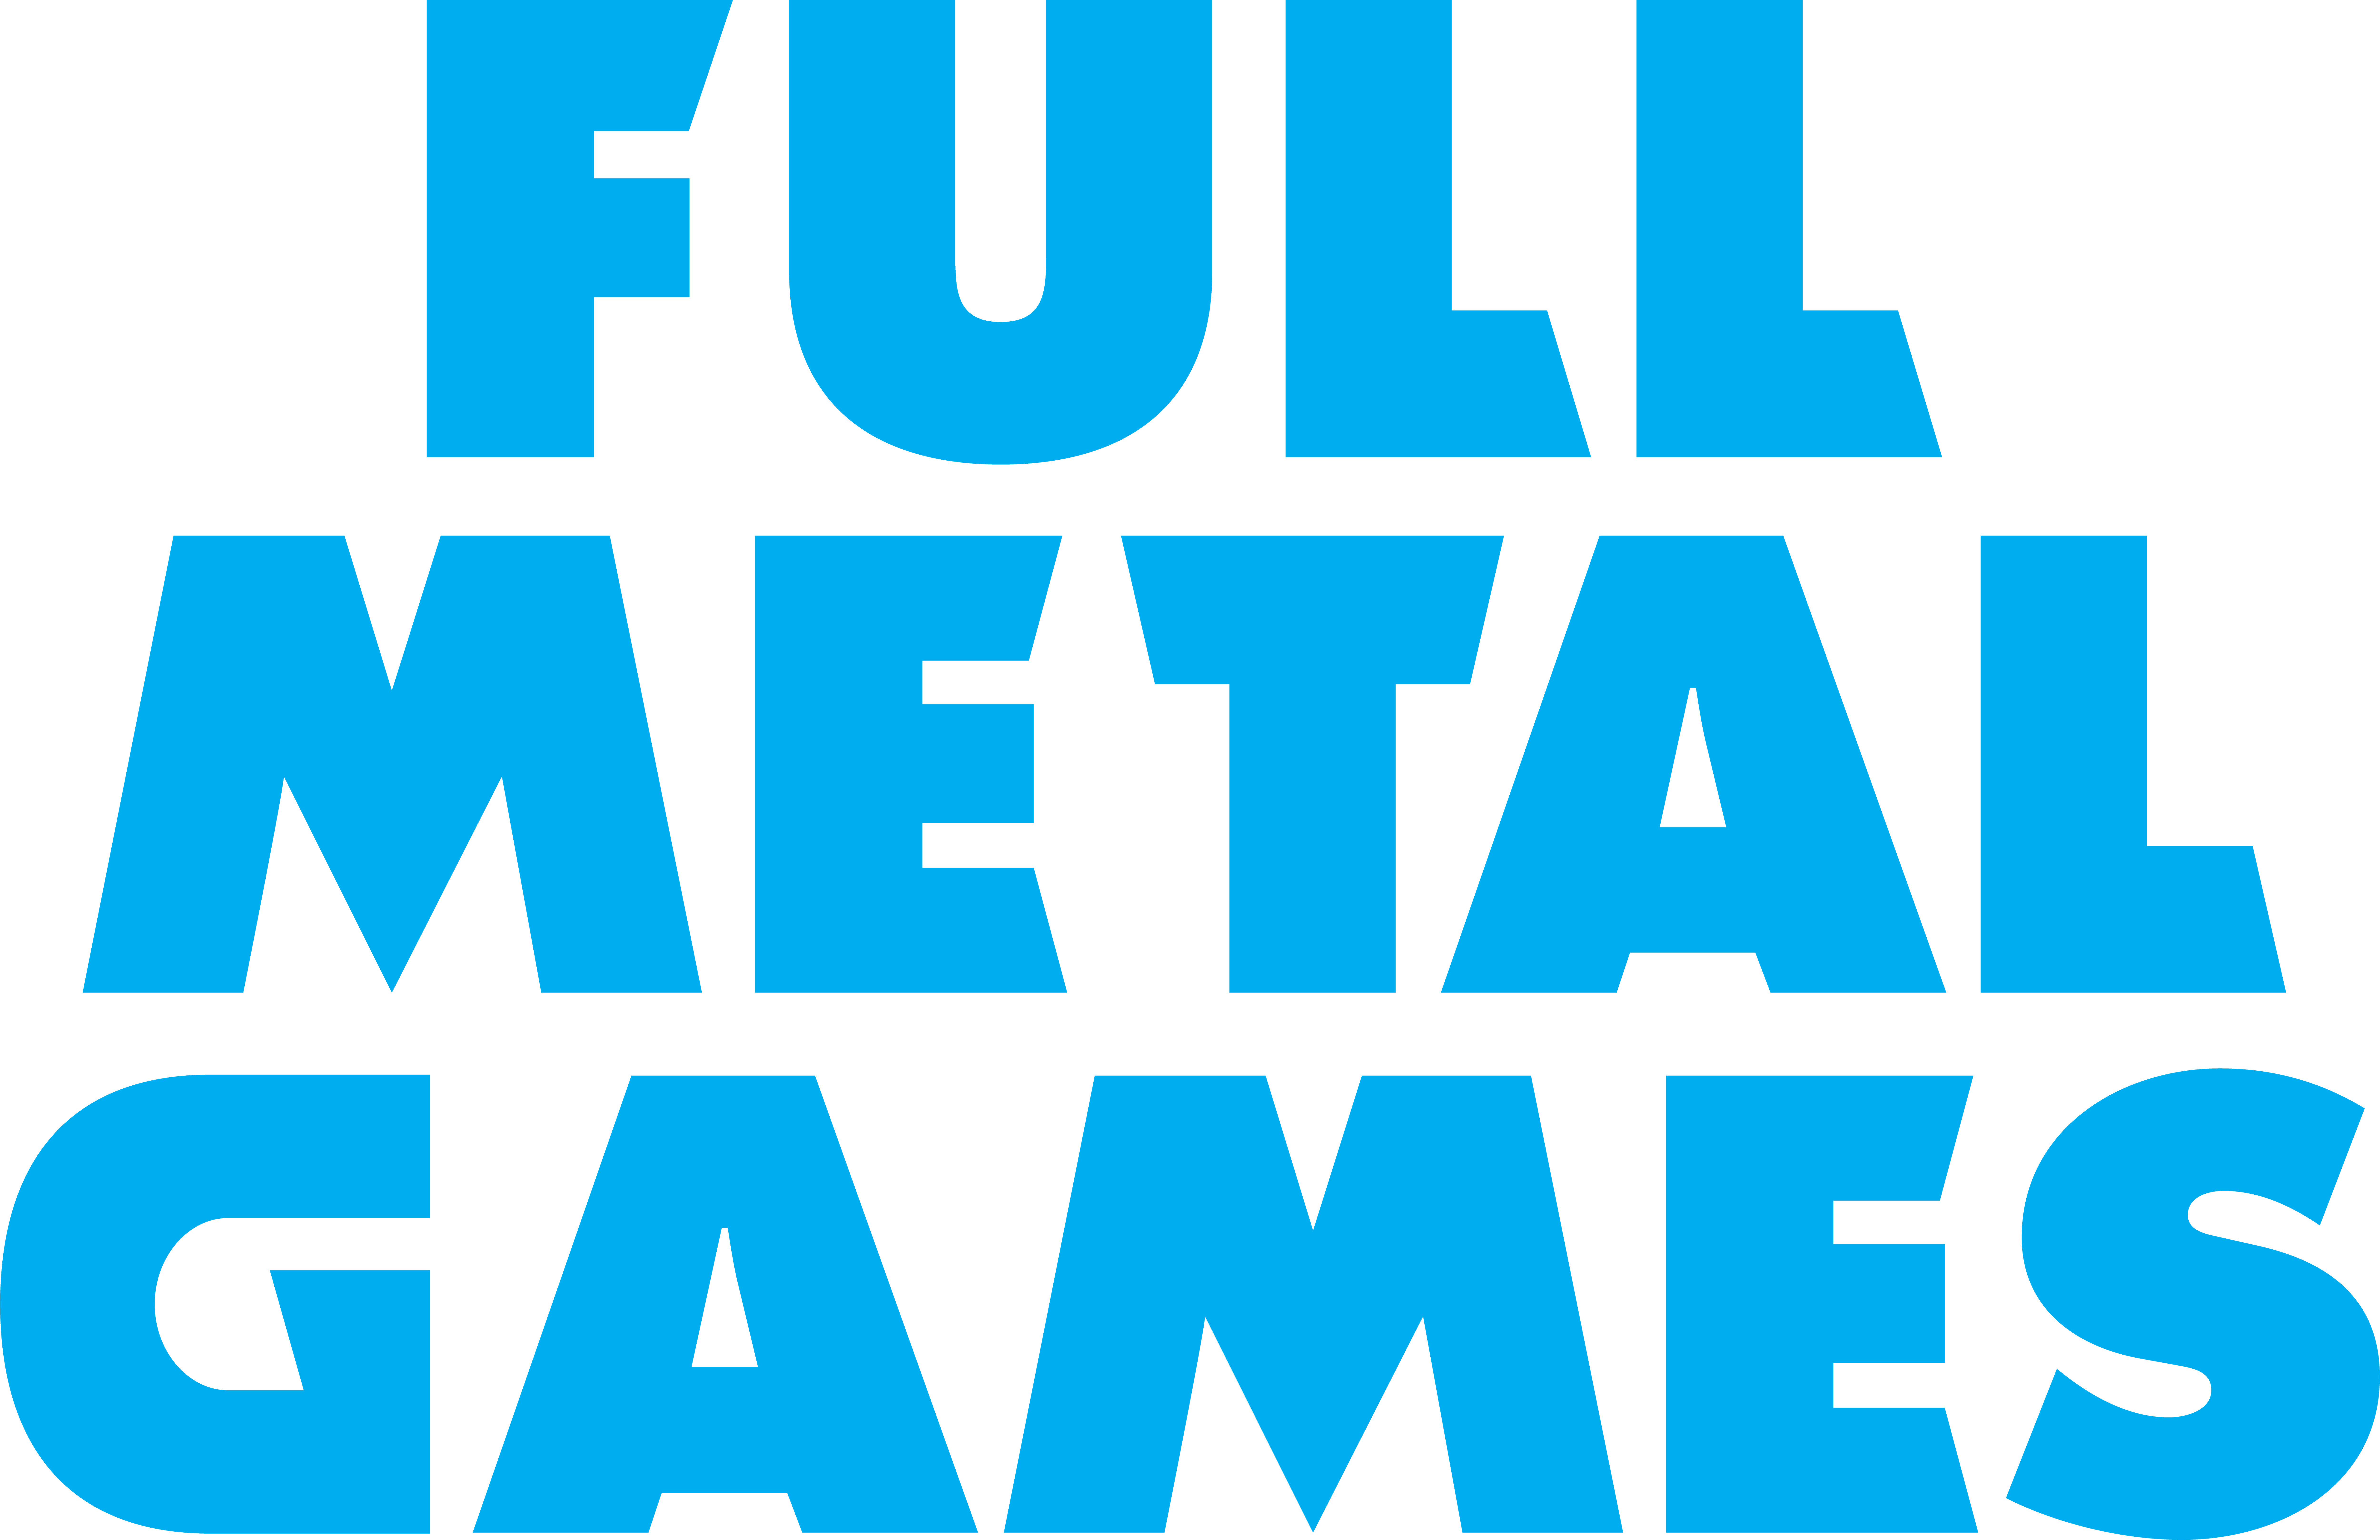 Full Metal Games